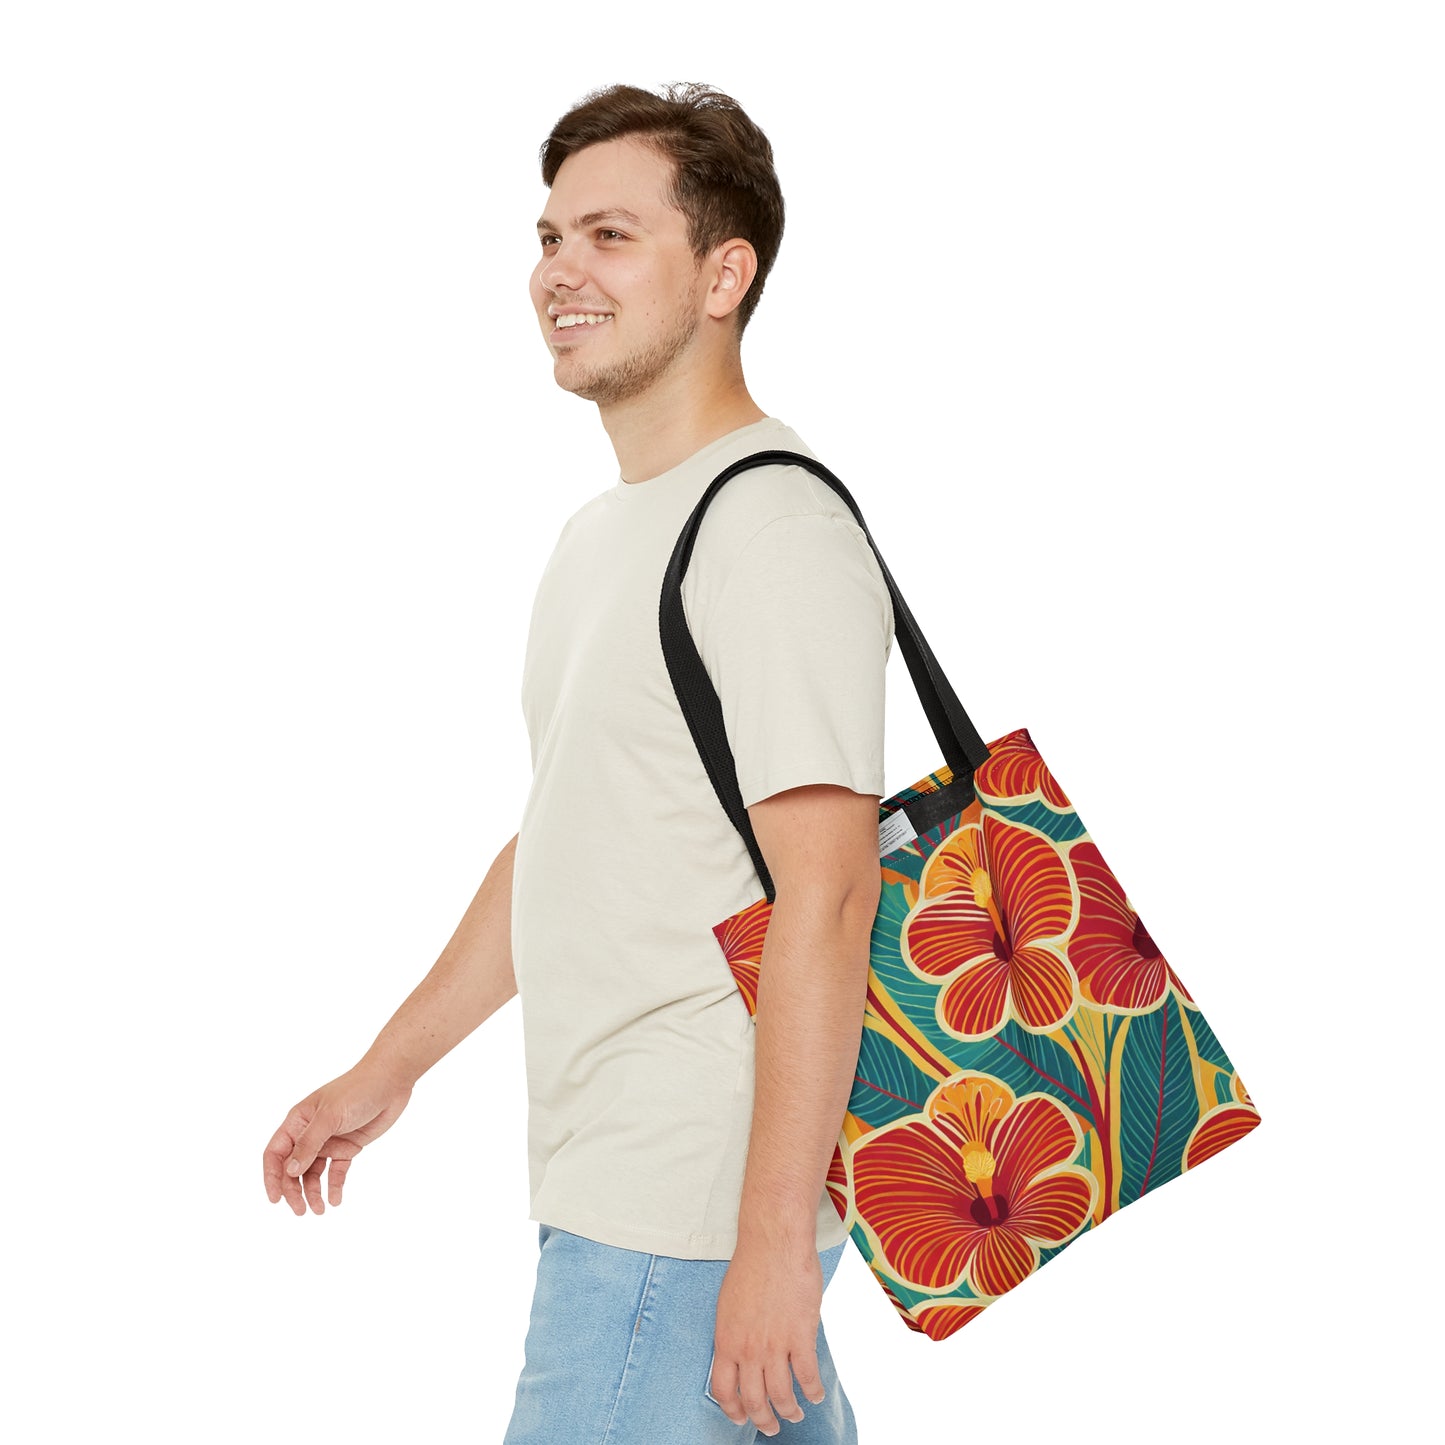 Hibiscus1 - Tote Bag